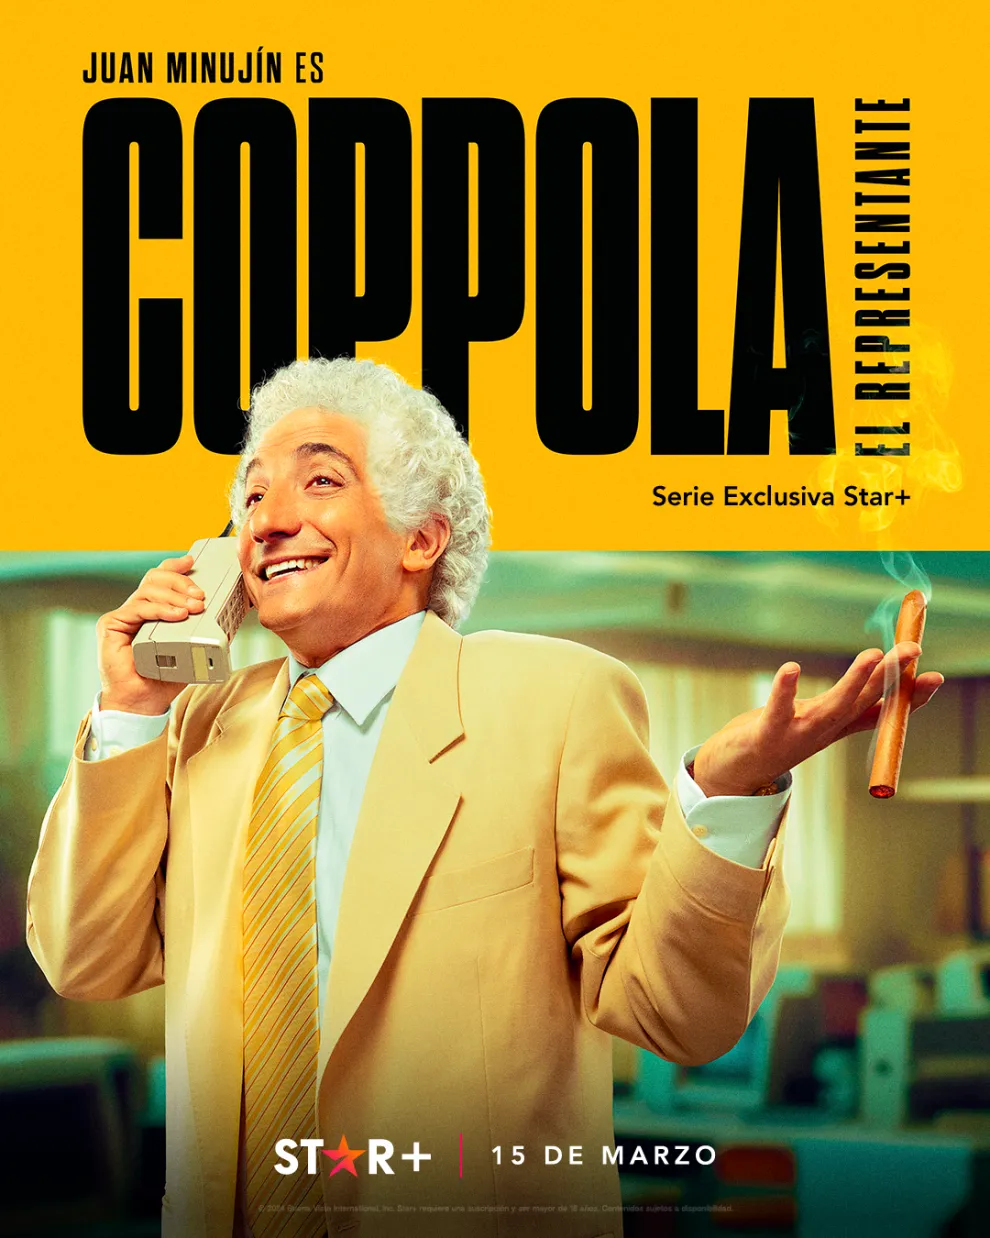 Poster oficial de la serie Coppola: el representante.